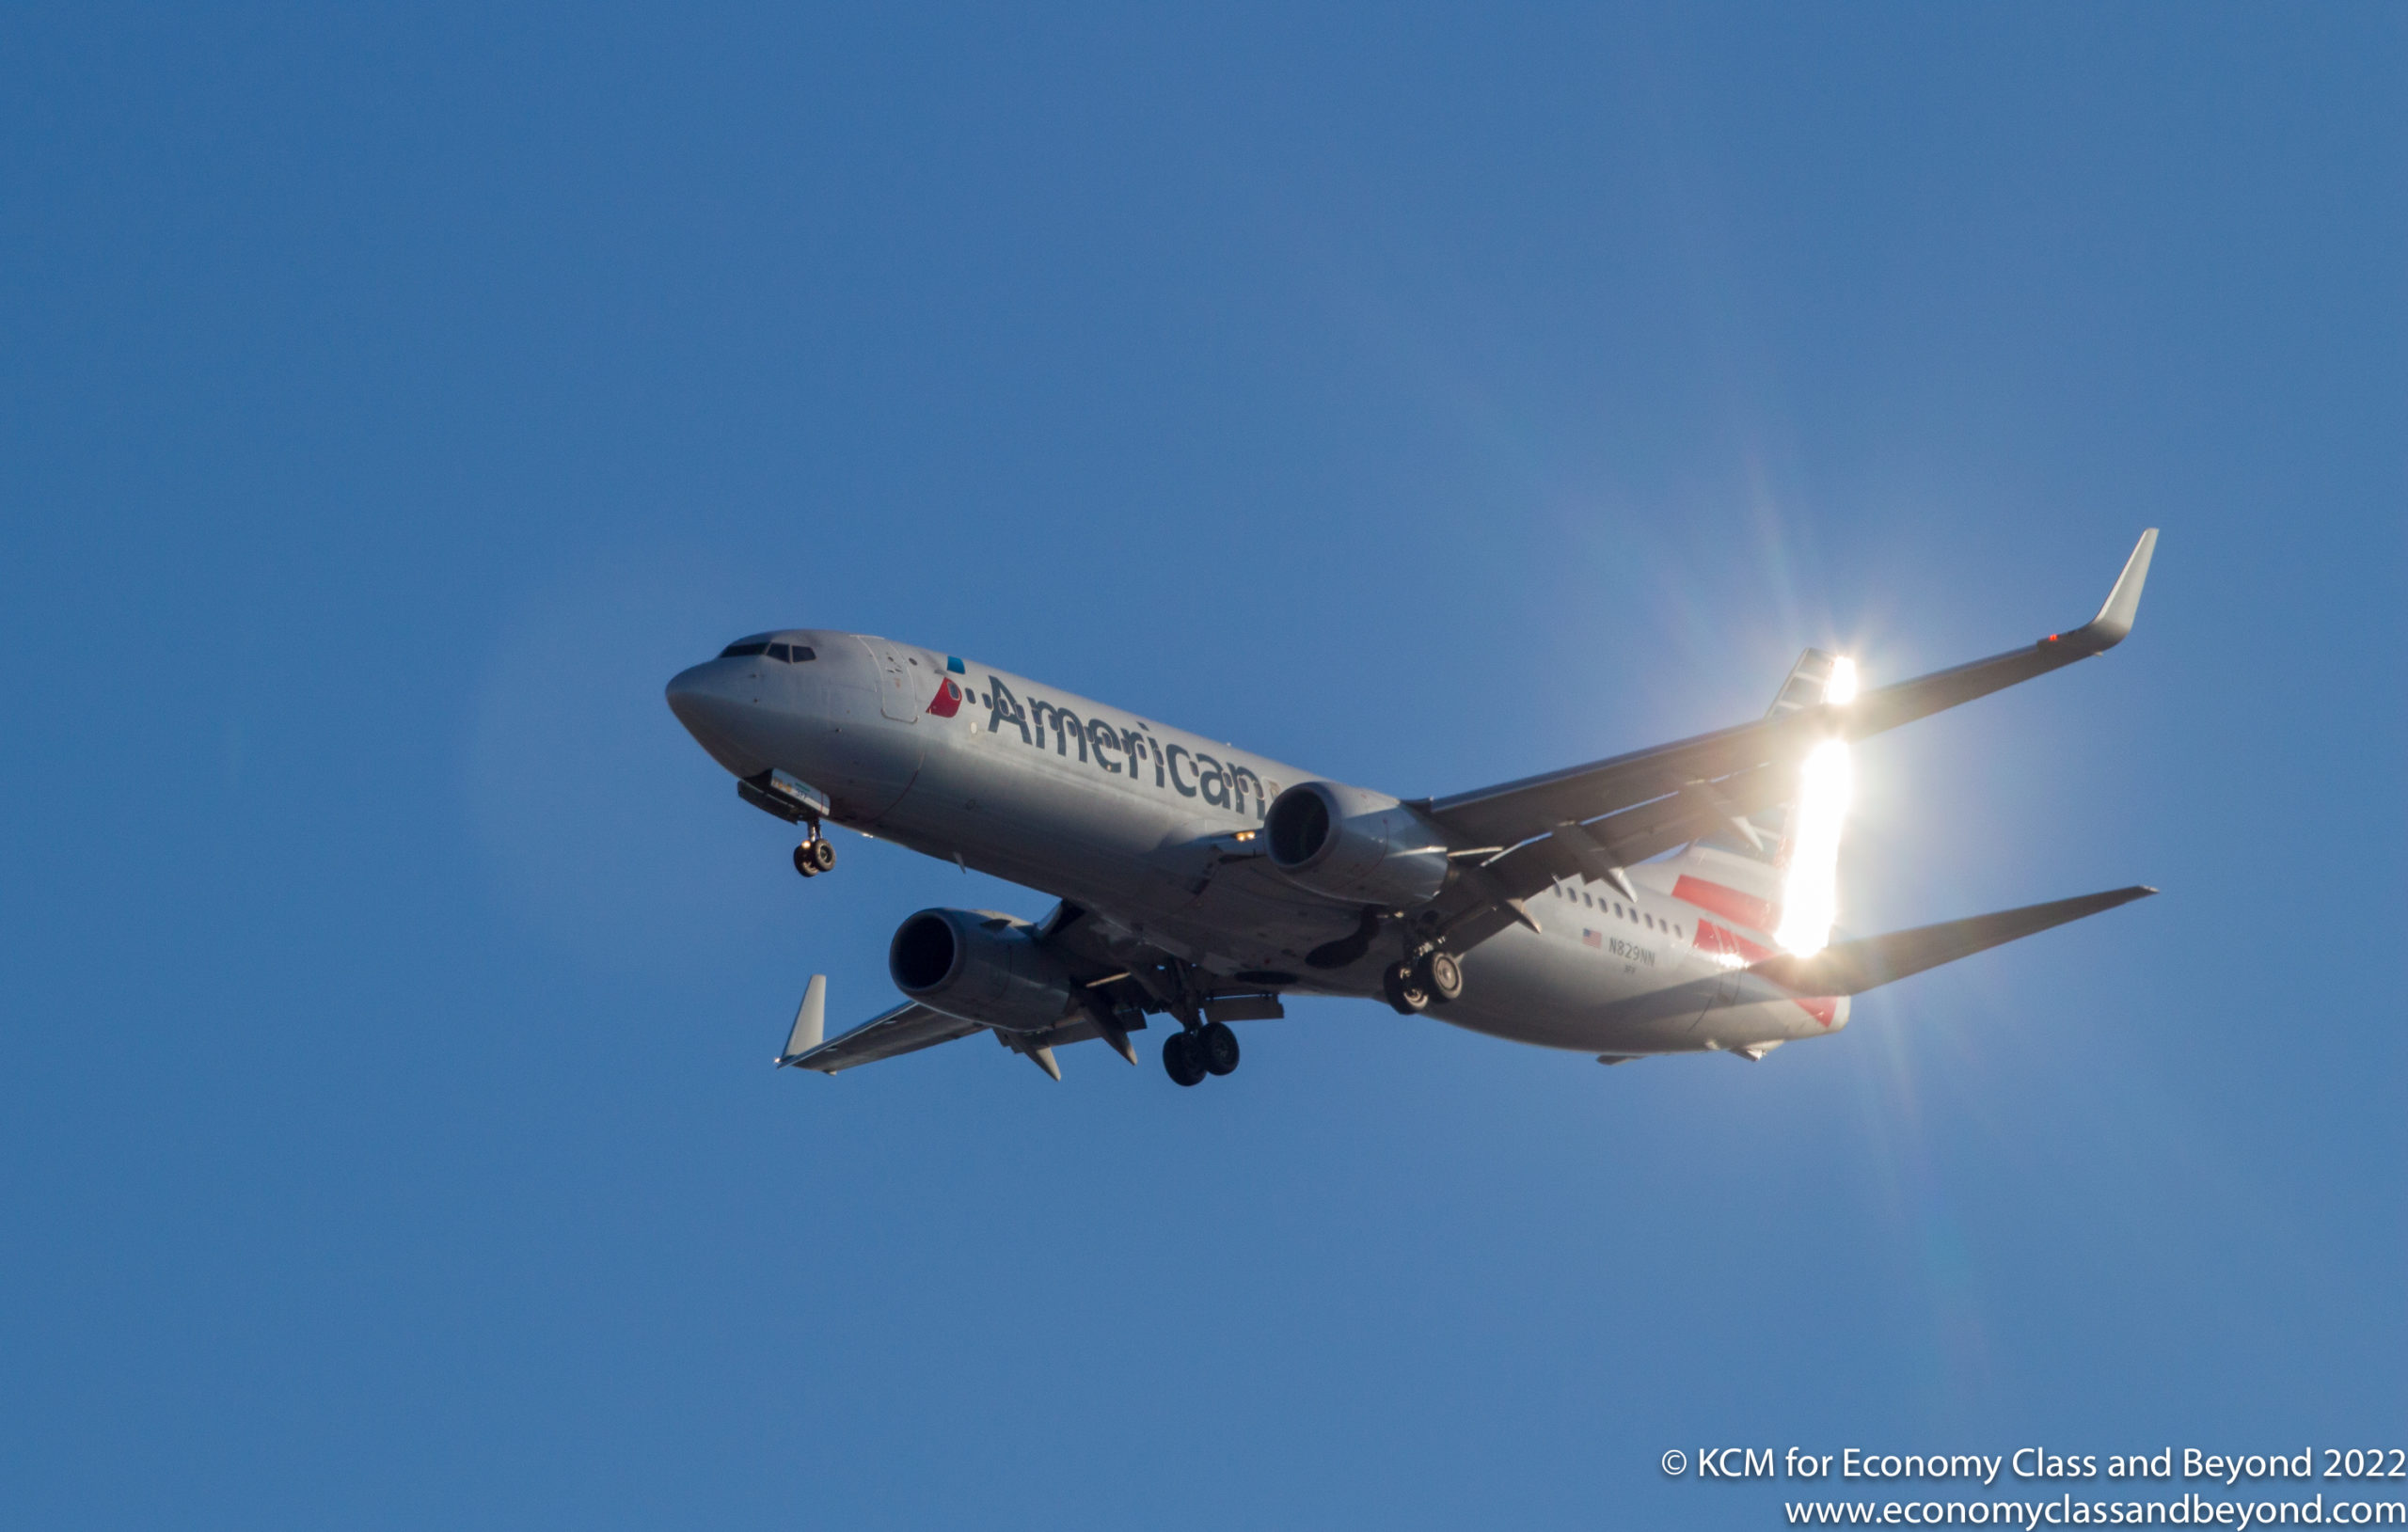 Arte de avión – American Airlines Boeing 737-800 en la aproximación final a Chicago O’Hare